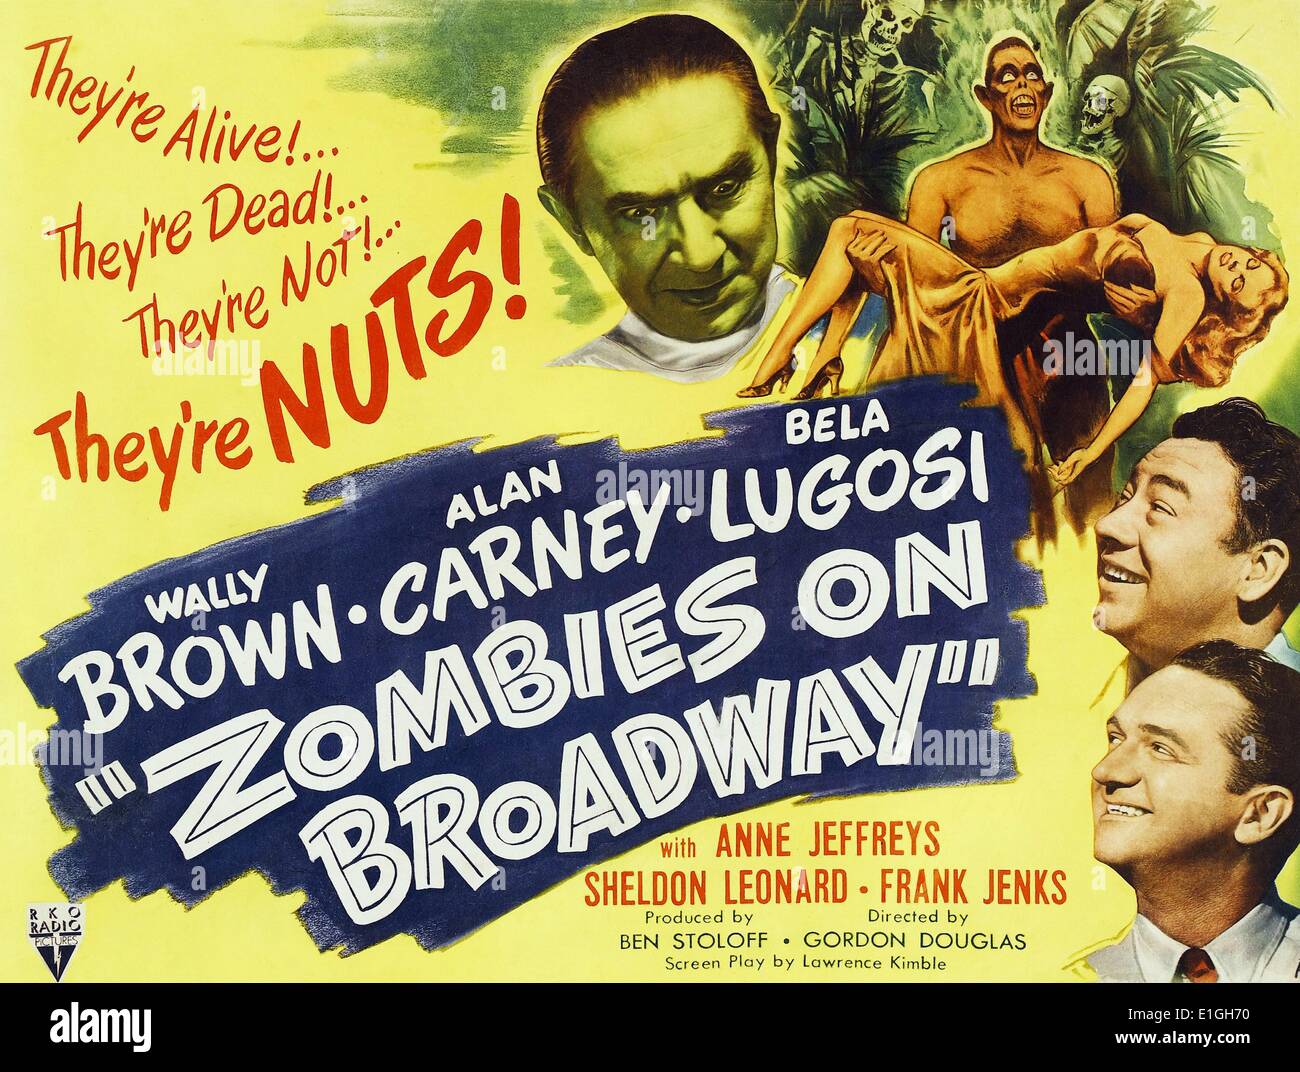 Lobby-Card für den Film "Zombies am Broadway" Zombies am Broadway, eine amerikanische Comedy-Horror-Film 1945 entlassen. Stockfoto